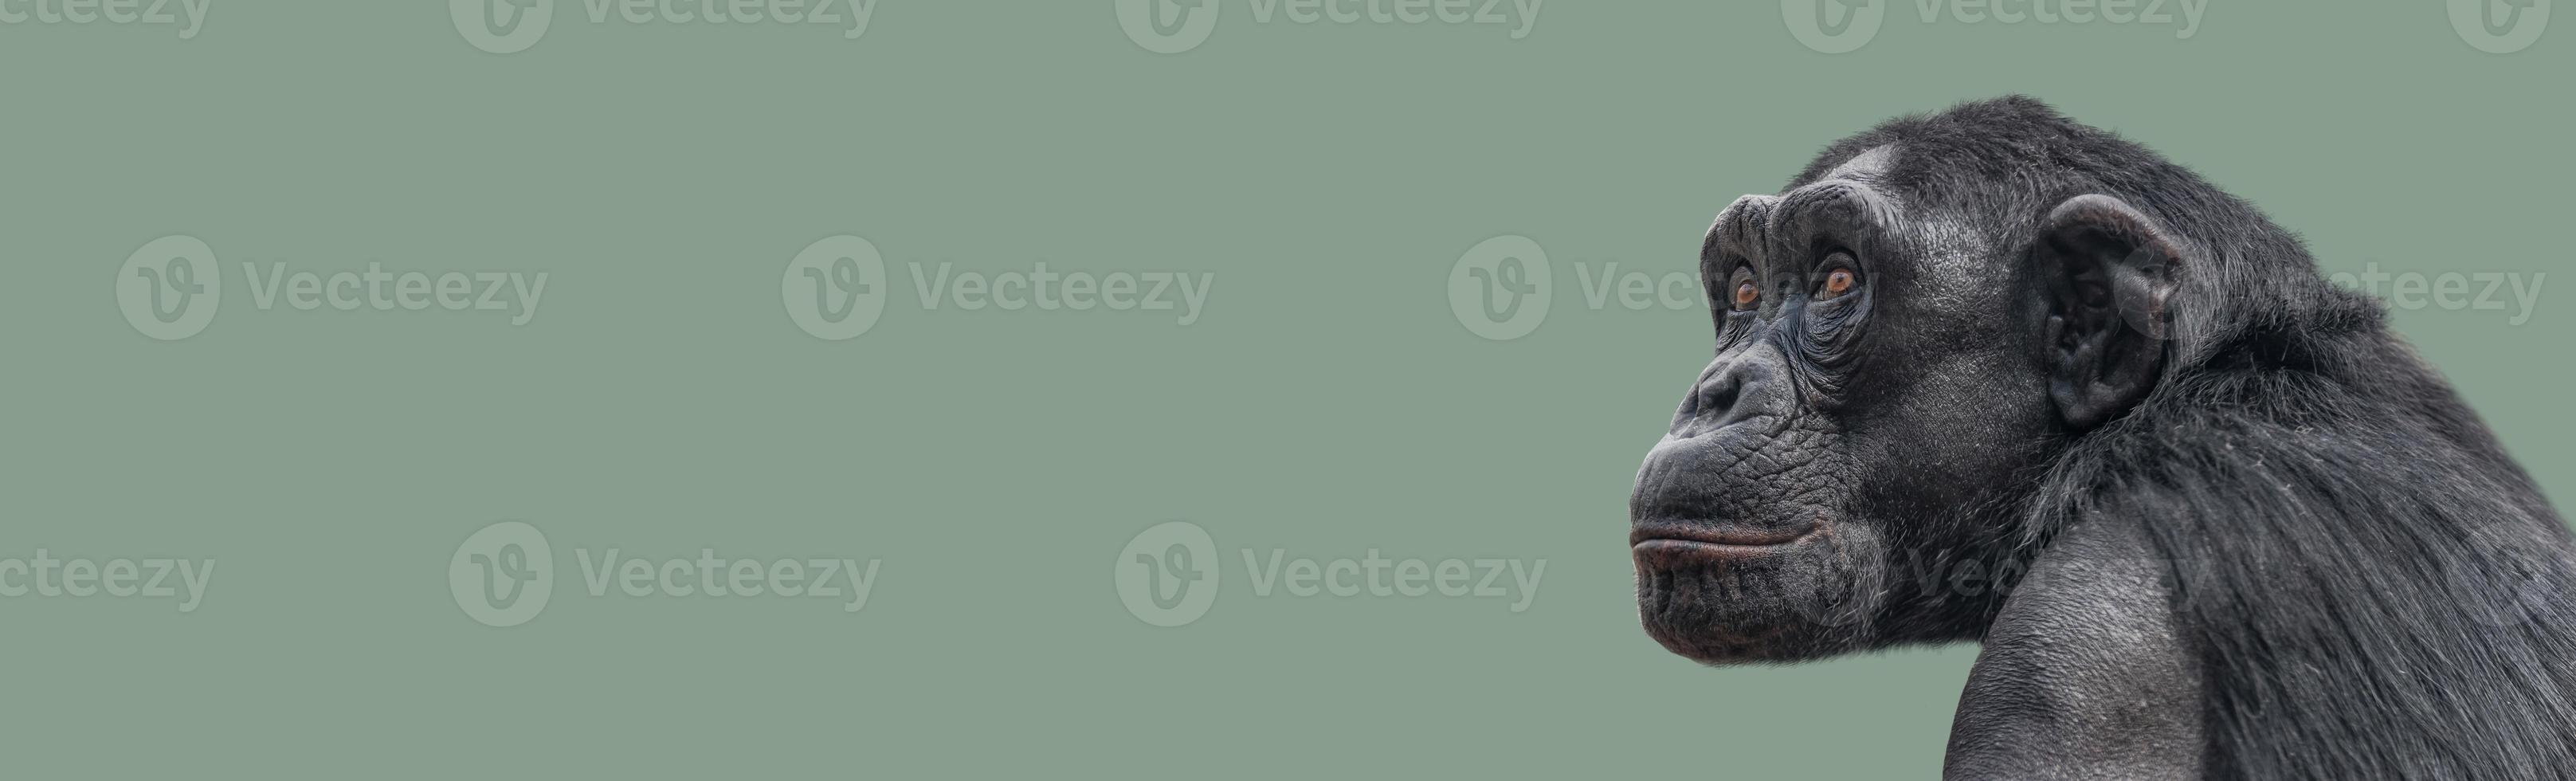 banner con un retrato de primer plano de chimpancé de aspecto inteligente con espacio de copia y fondo sólido. concepto de conservación de la vida silvestre, biodiversidad e inteligencia animal. foto